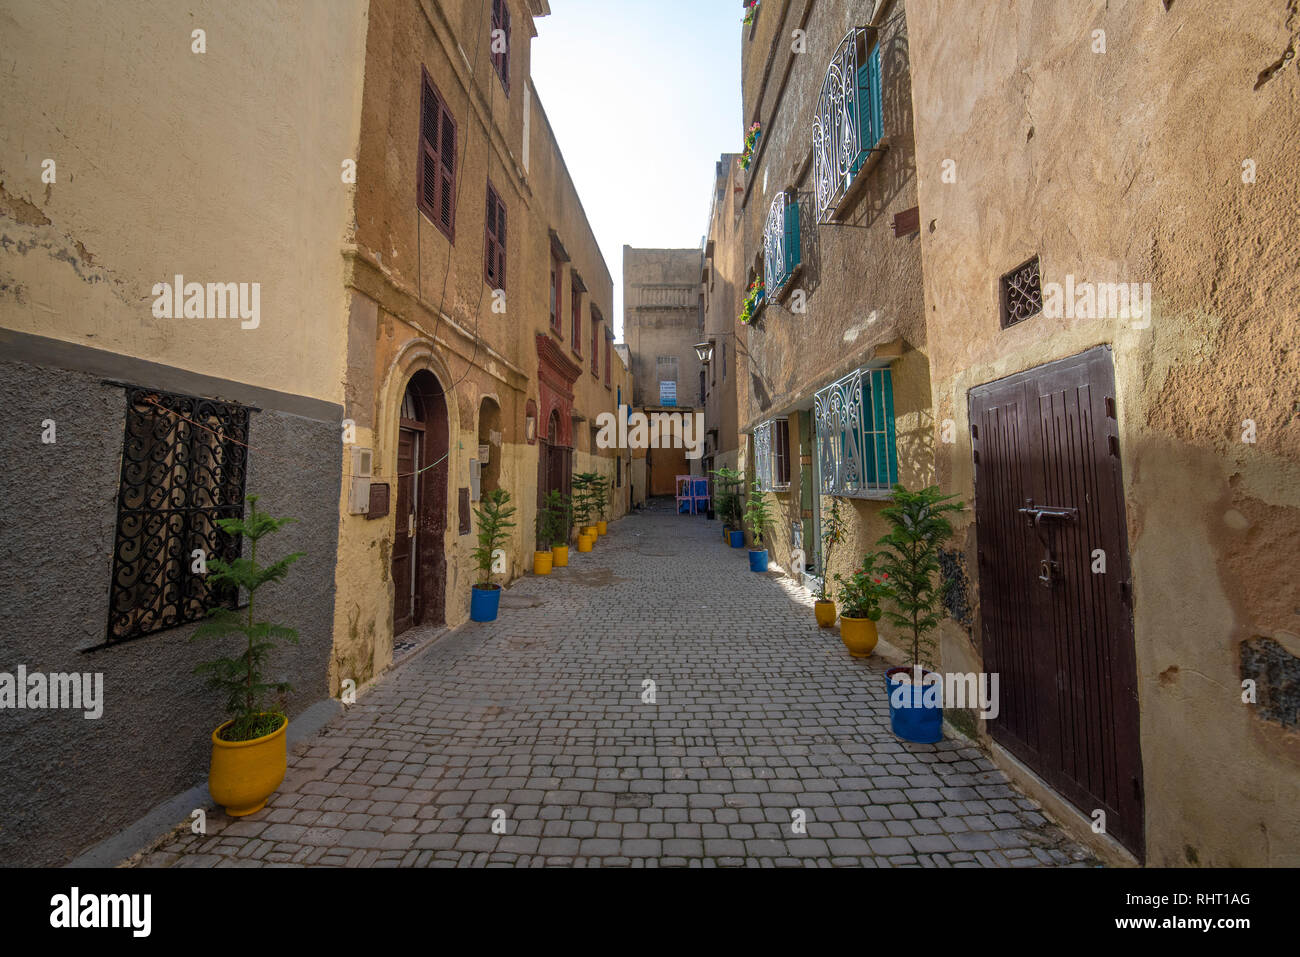 El Jadida, Maroc. Vue sur la rue des maisons à Mazagan. Le mur de la ville autour de lui. C'est une ville portuaire fortifiée portugaise Banque D'Images